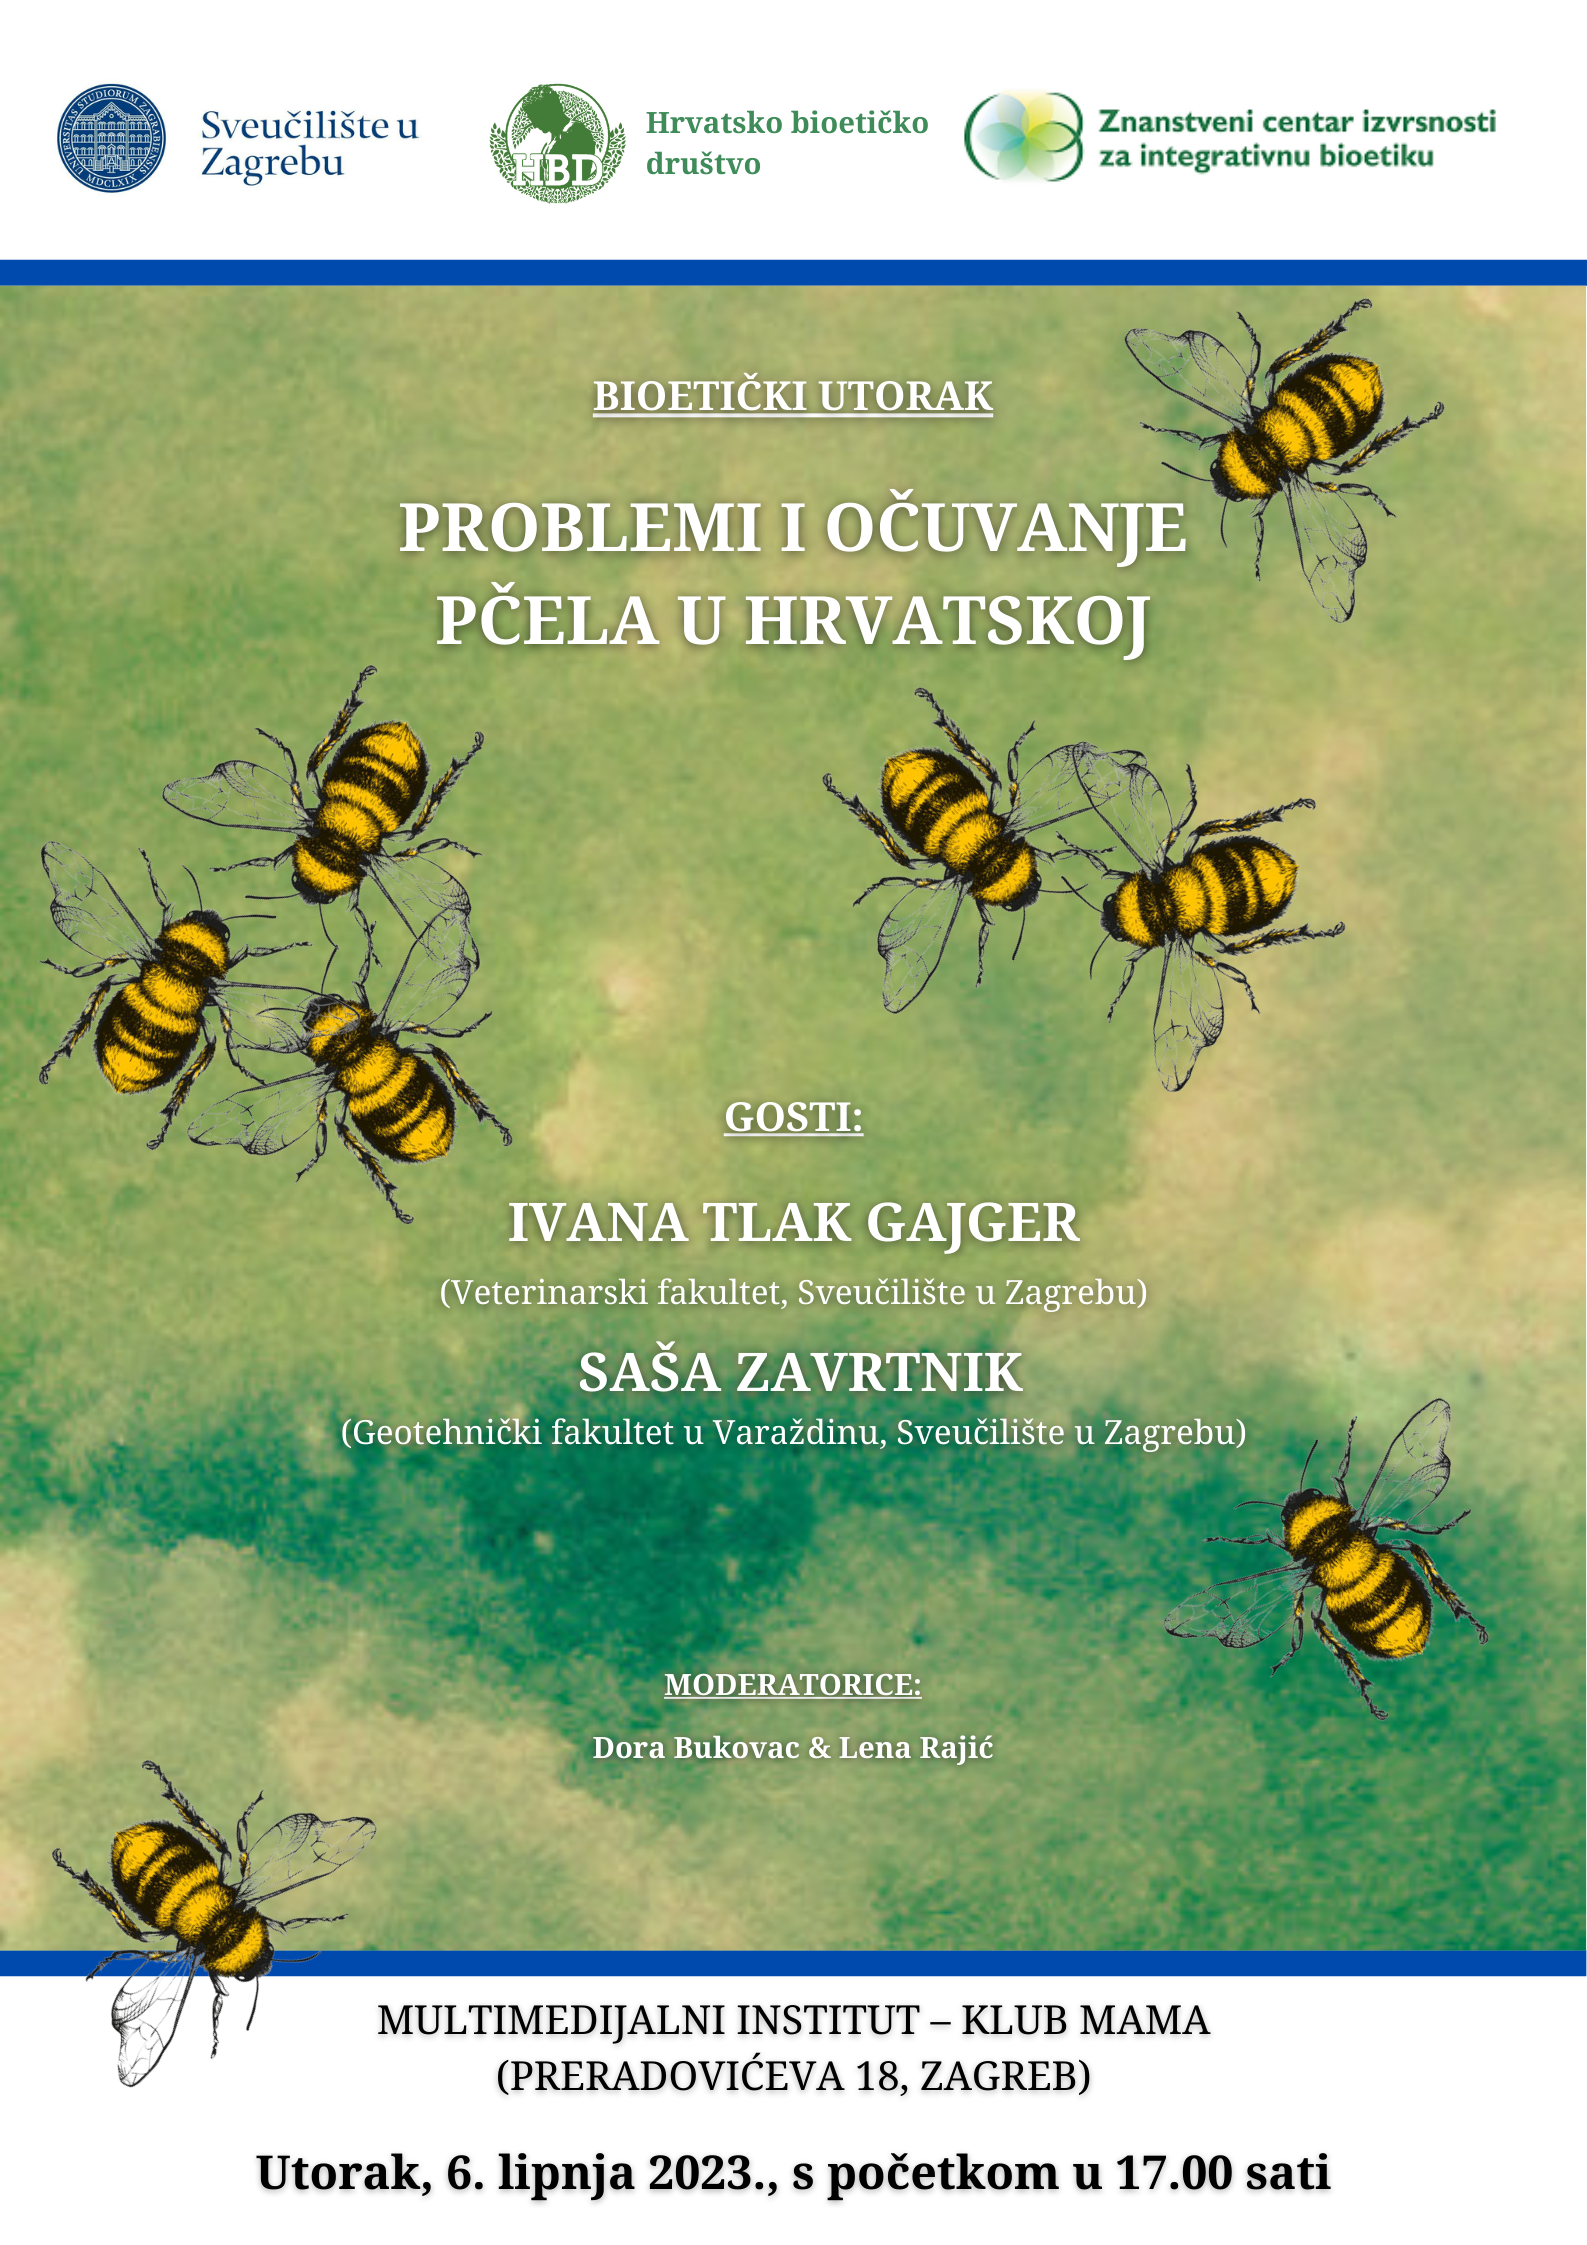 Problemi i očuvanje pčela u Hrvatskoj (Bioetički utorak, 6. 6. 2023., 17.00)